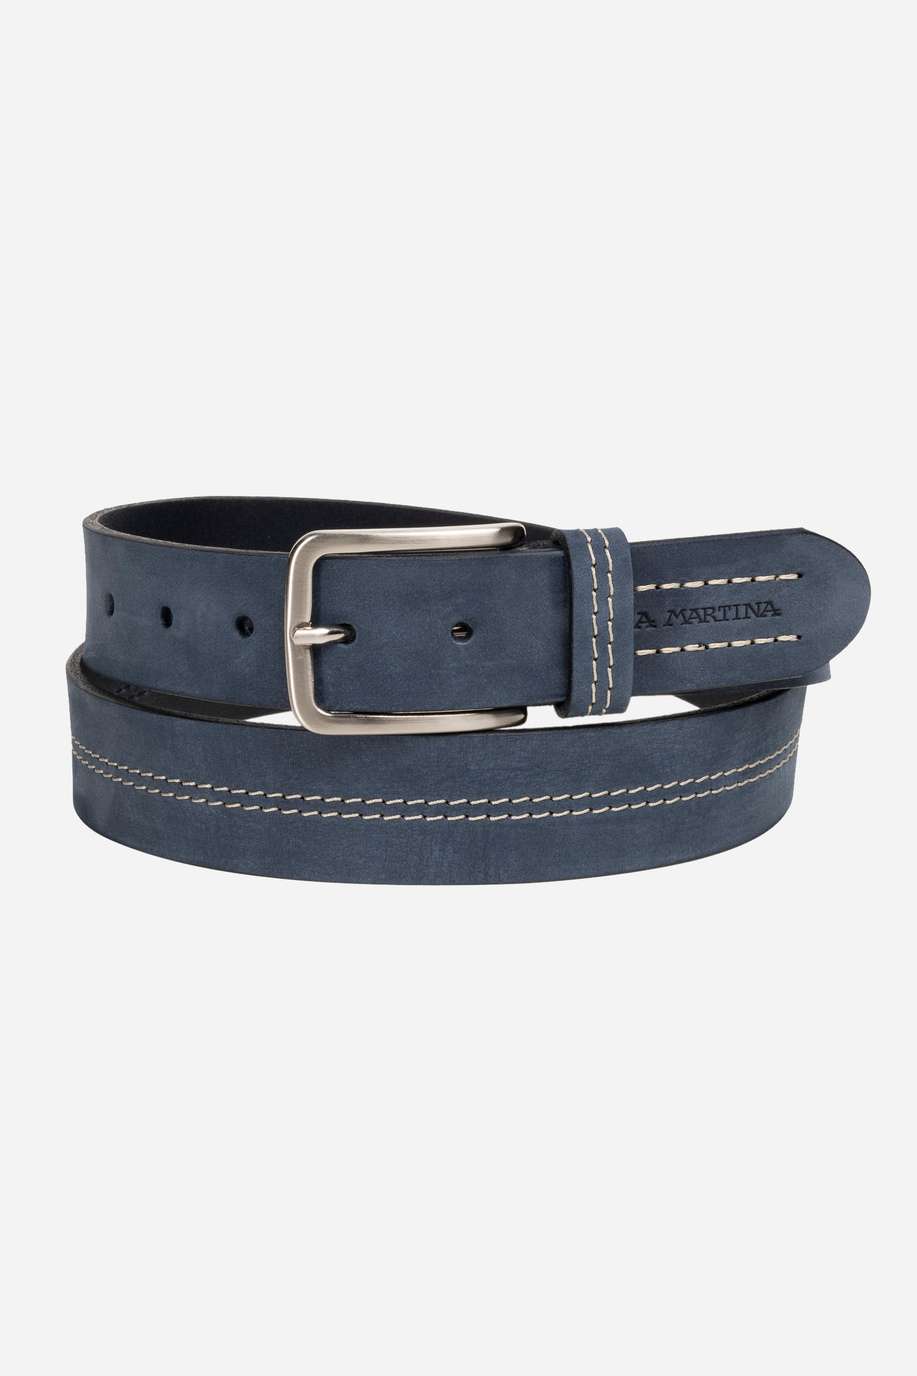 Solid blue leather men belt - Belts | La Martina - Official Online Shop